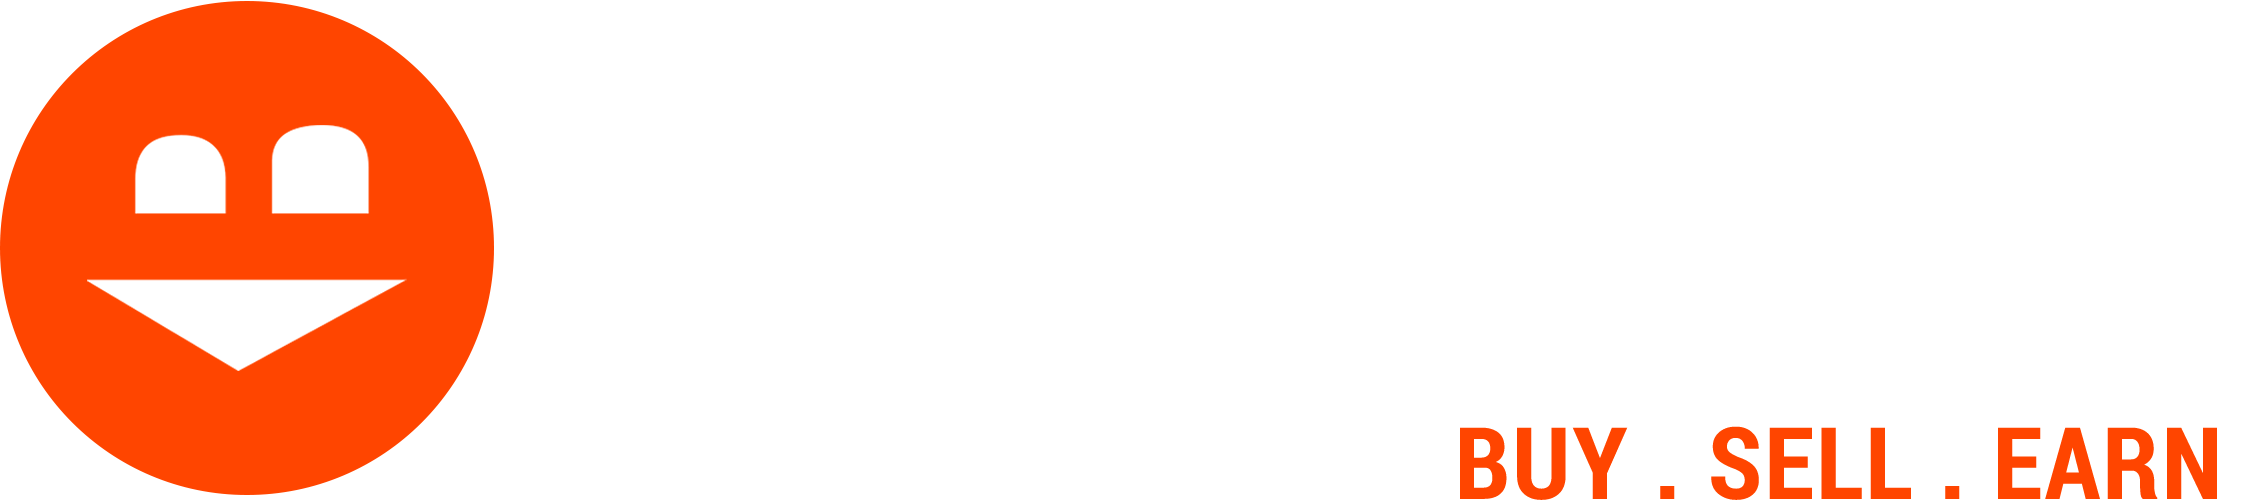 KapraBazar - Clothing Marketplace